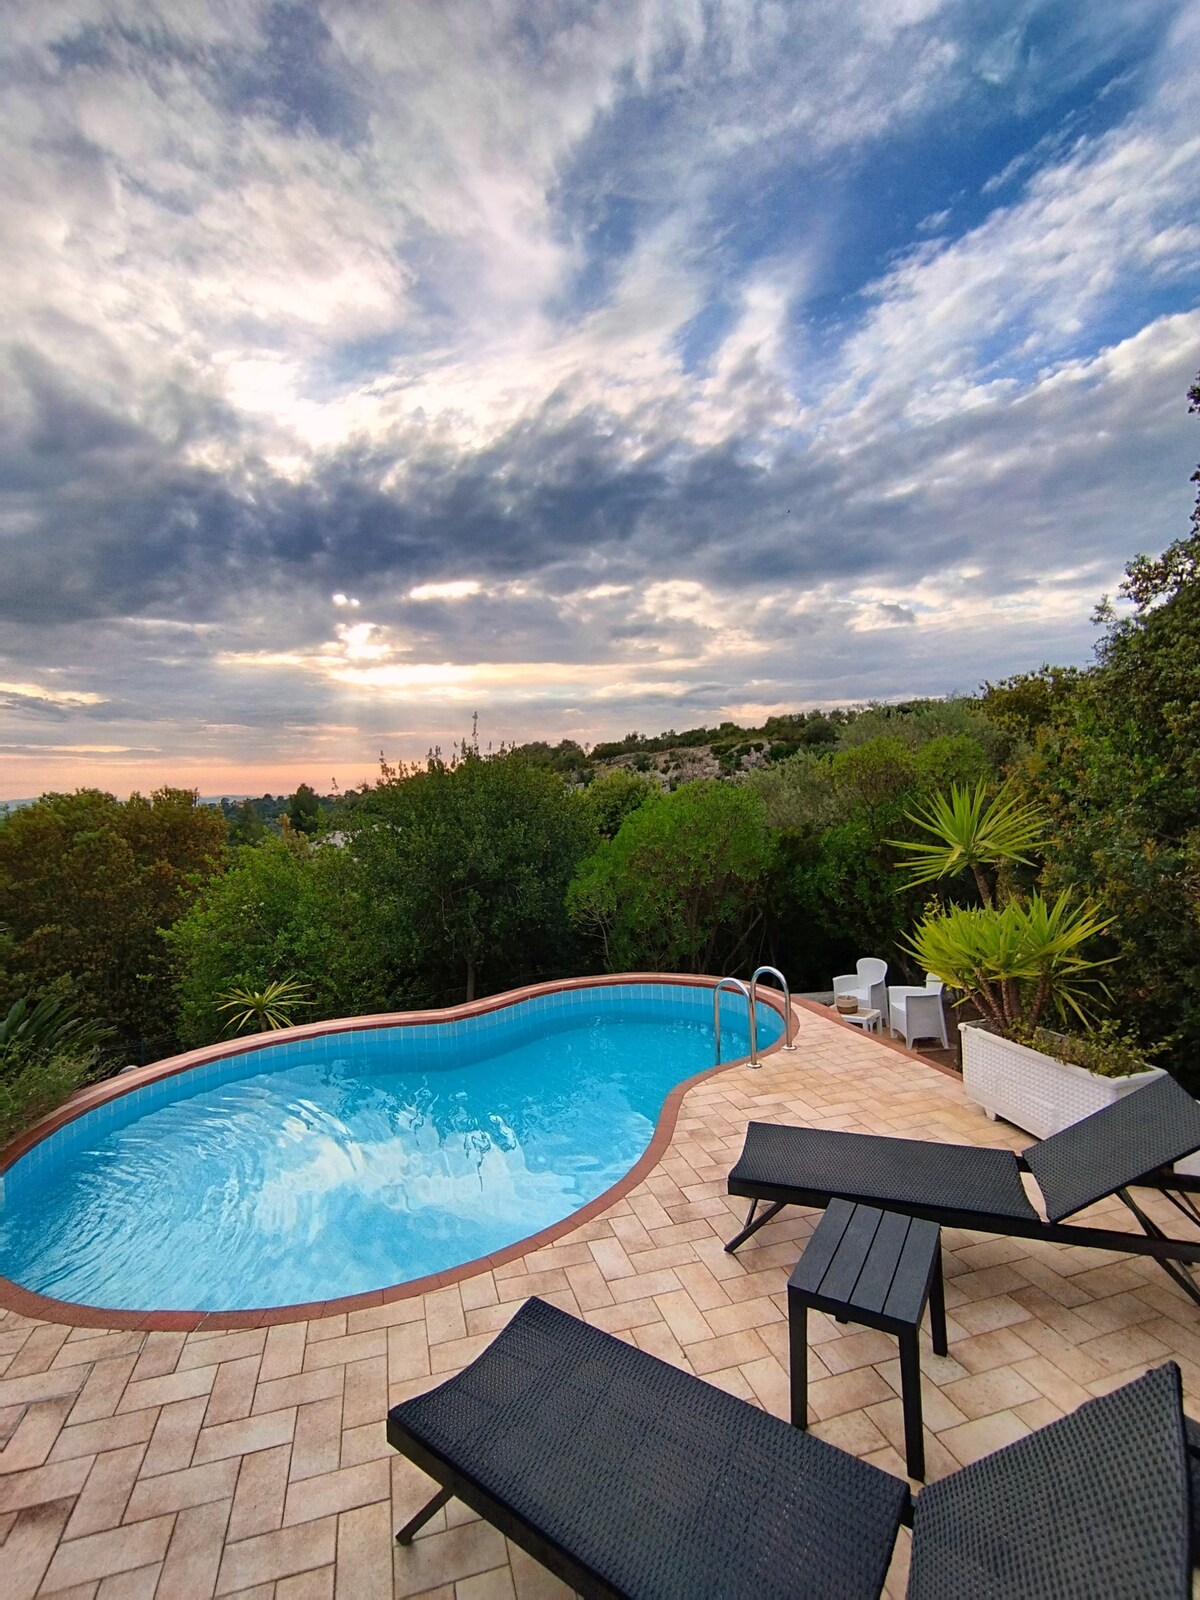 Villa in Sardegna con piscina a uso esclusivo